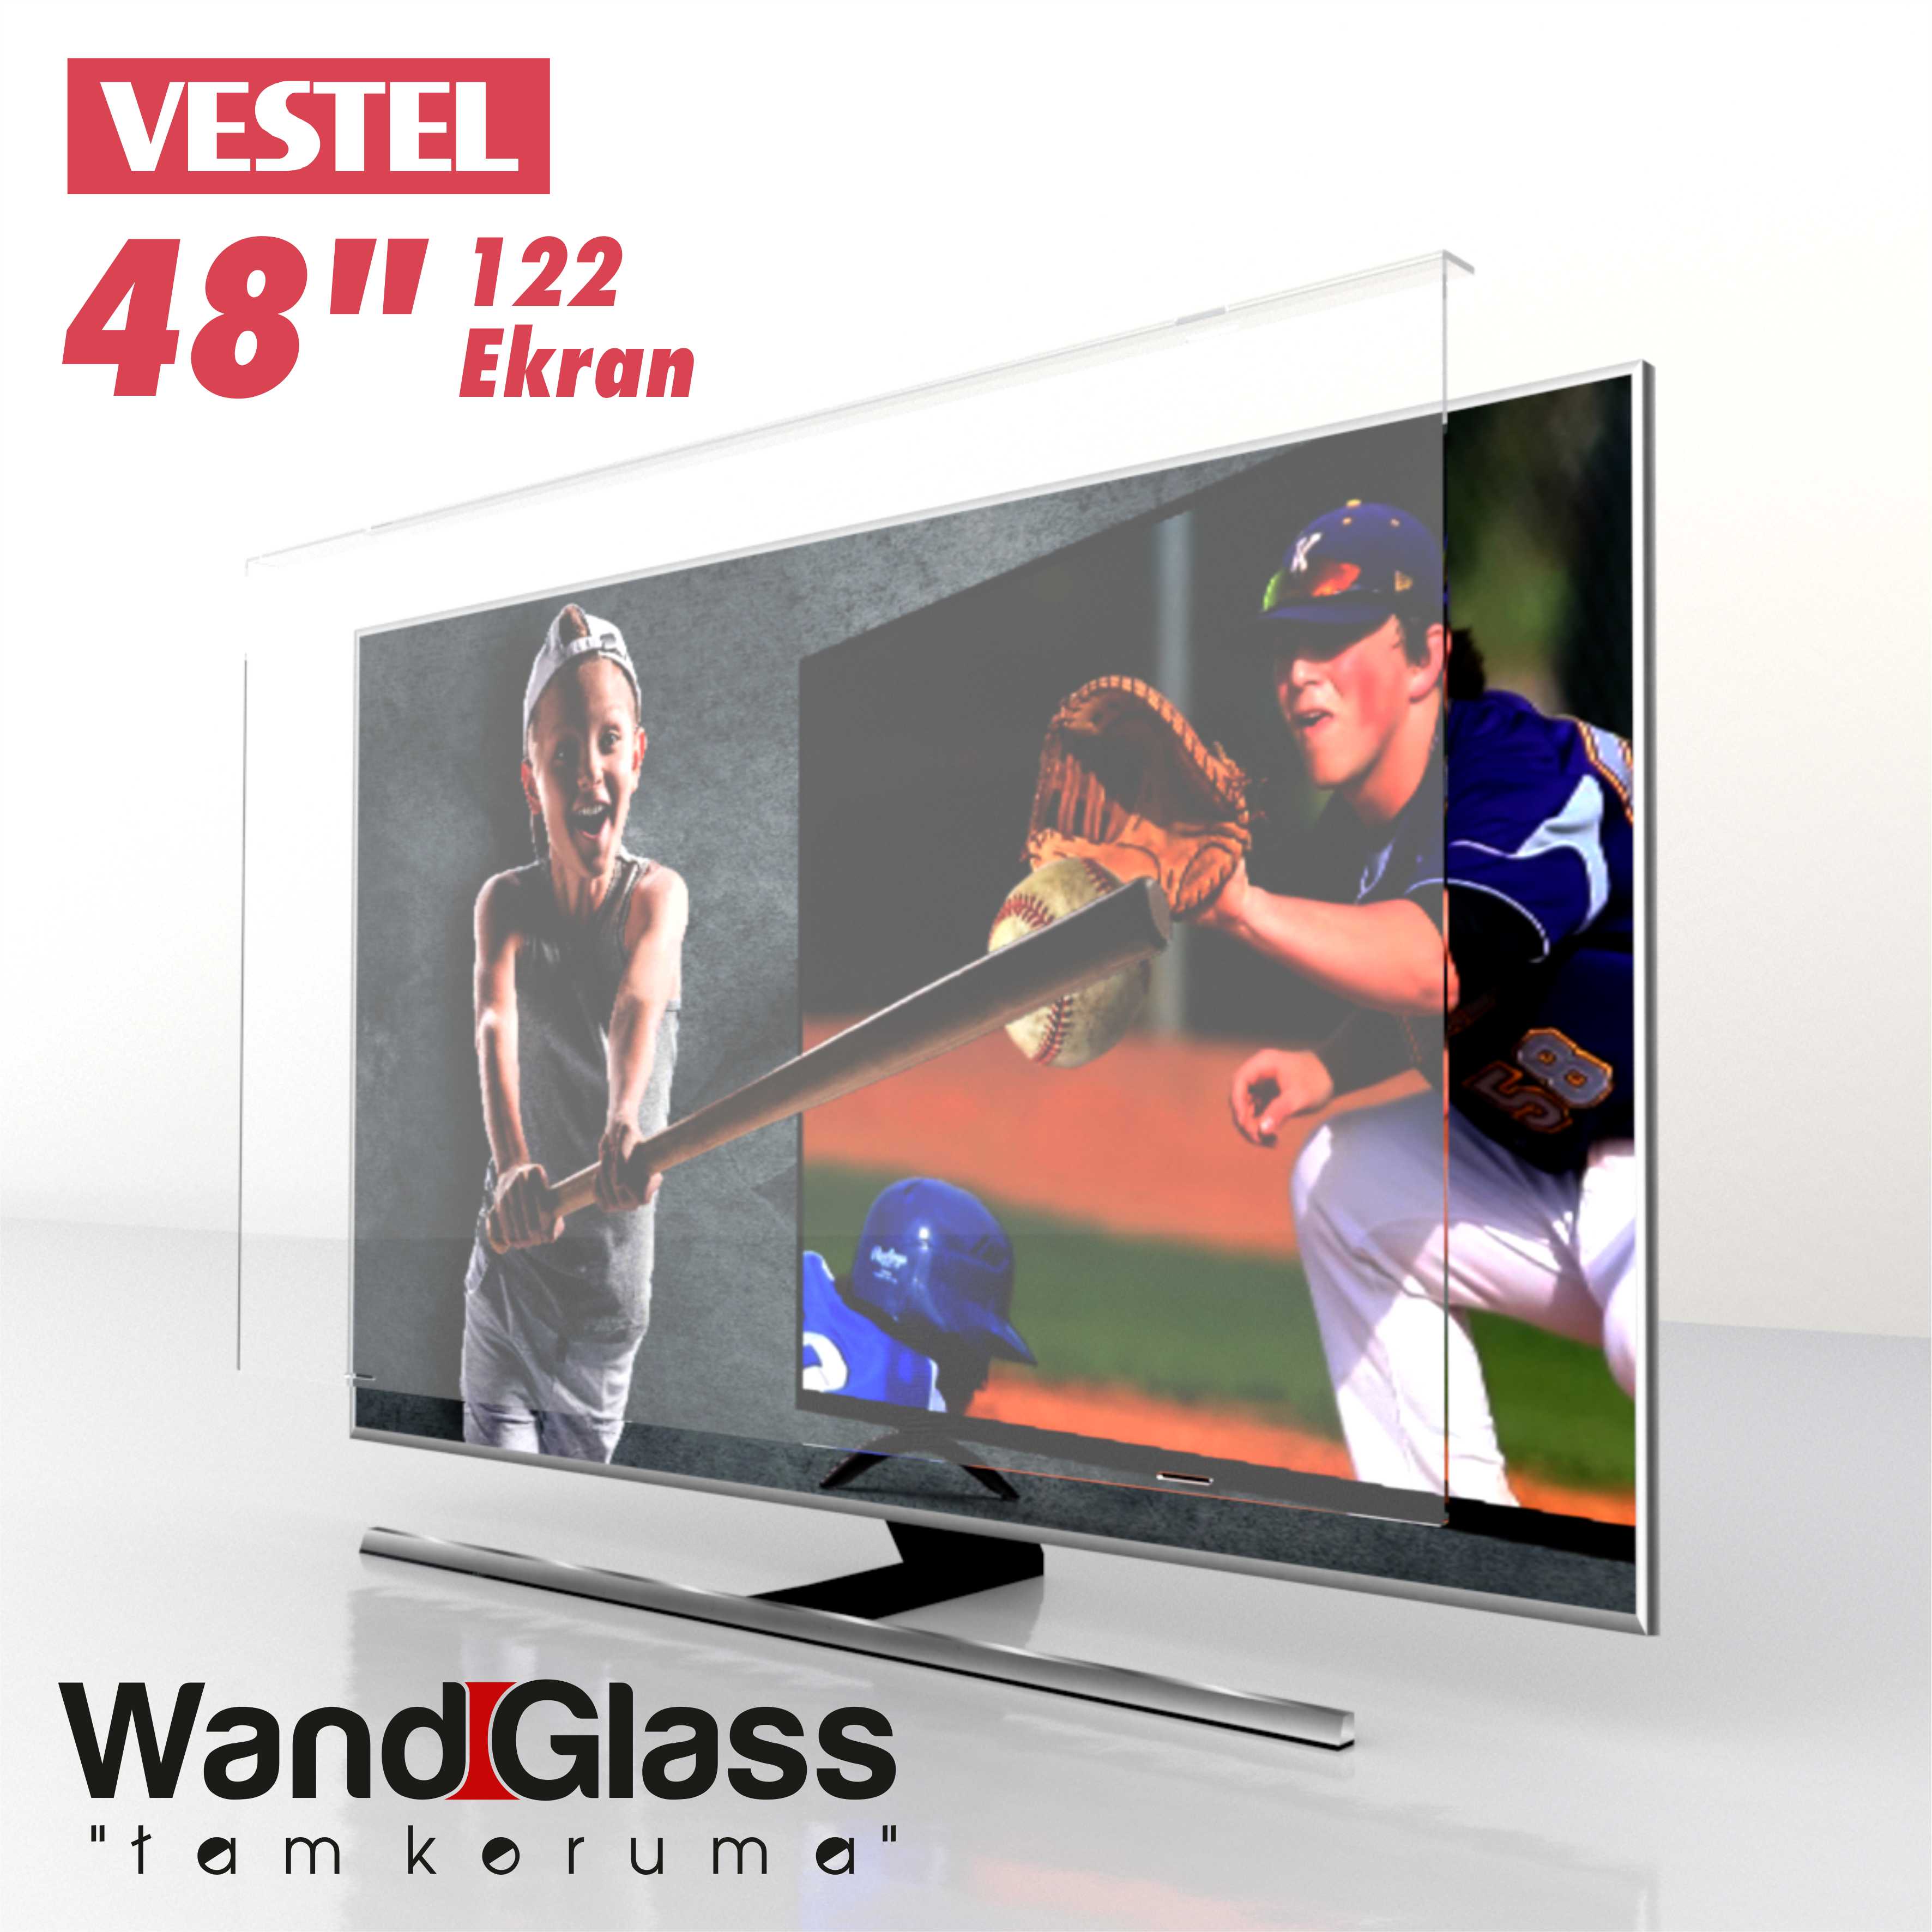 Vestel 48" INC 122 Ekran TV Ekran Koruma Camı | Wandglass